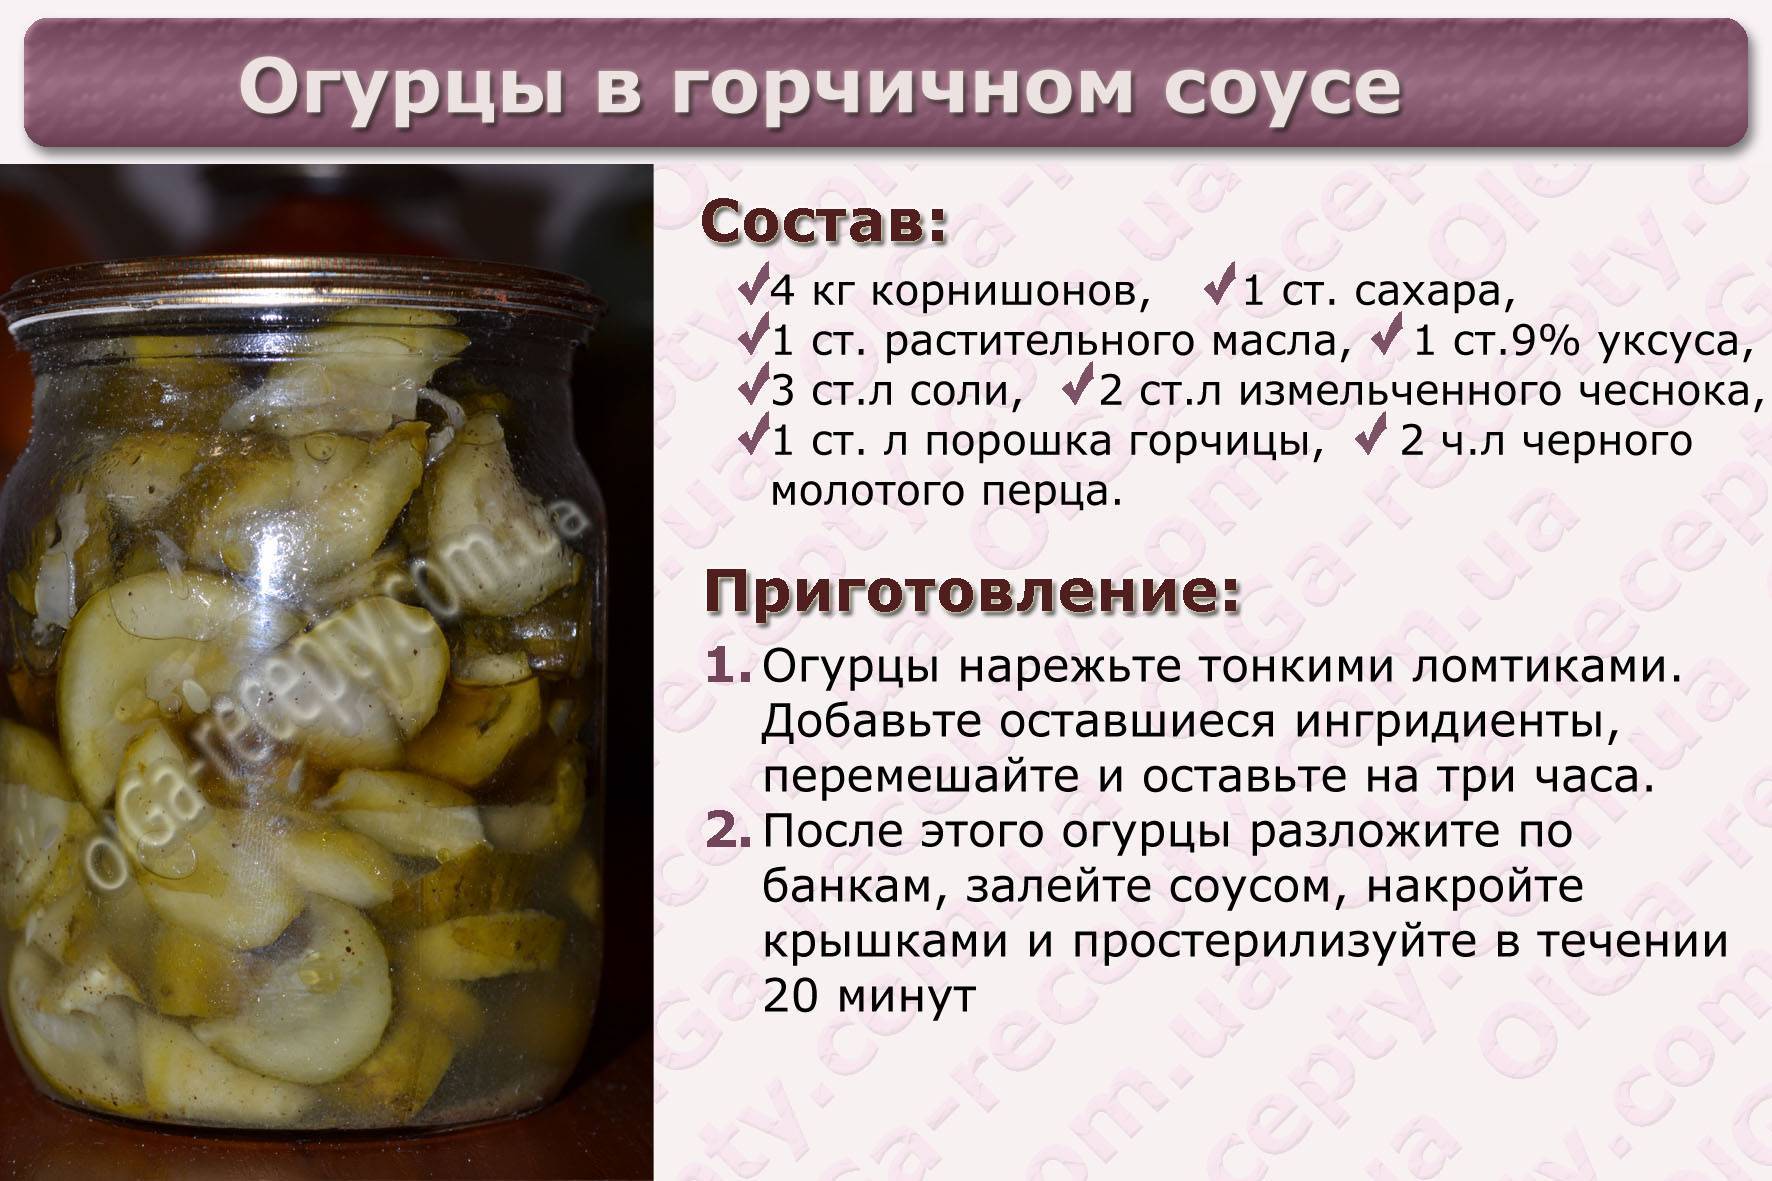 4 лучших пошаговых рецепта приготовления огурцов Зимний король и условия хранения